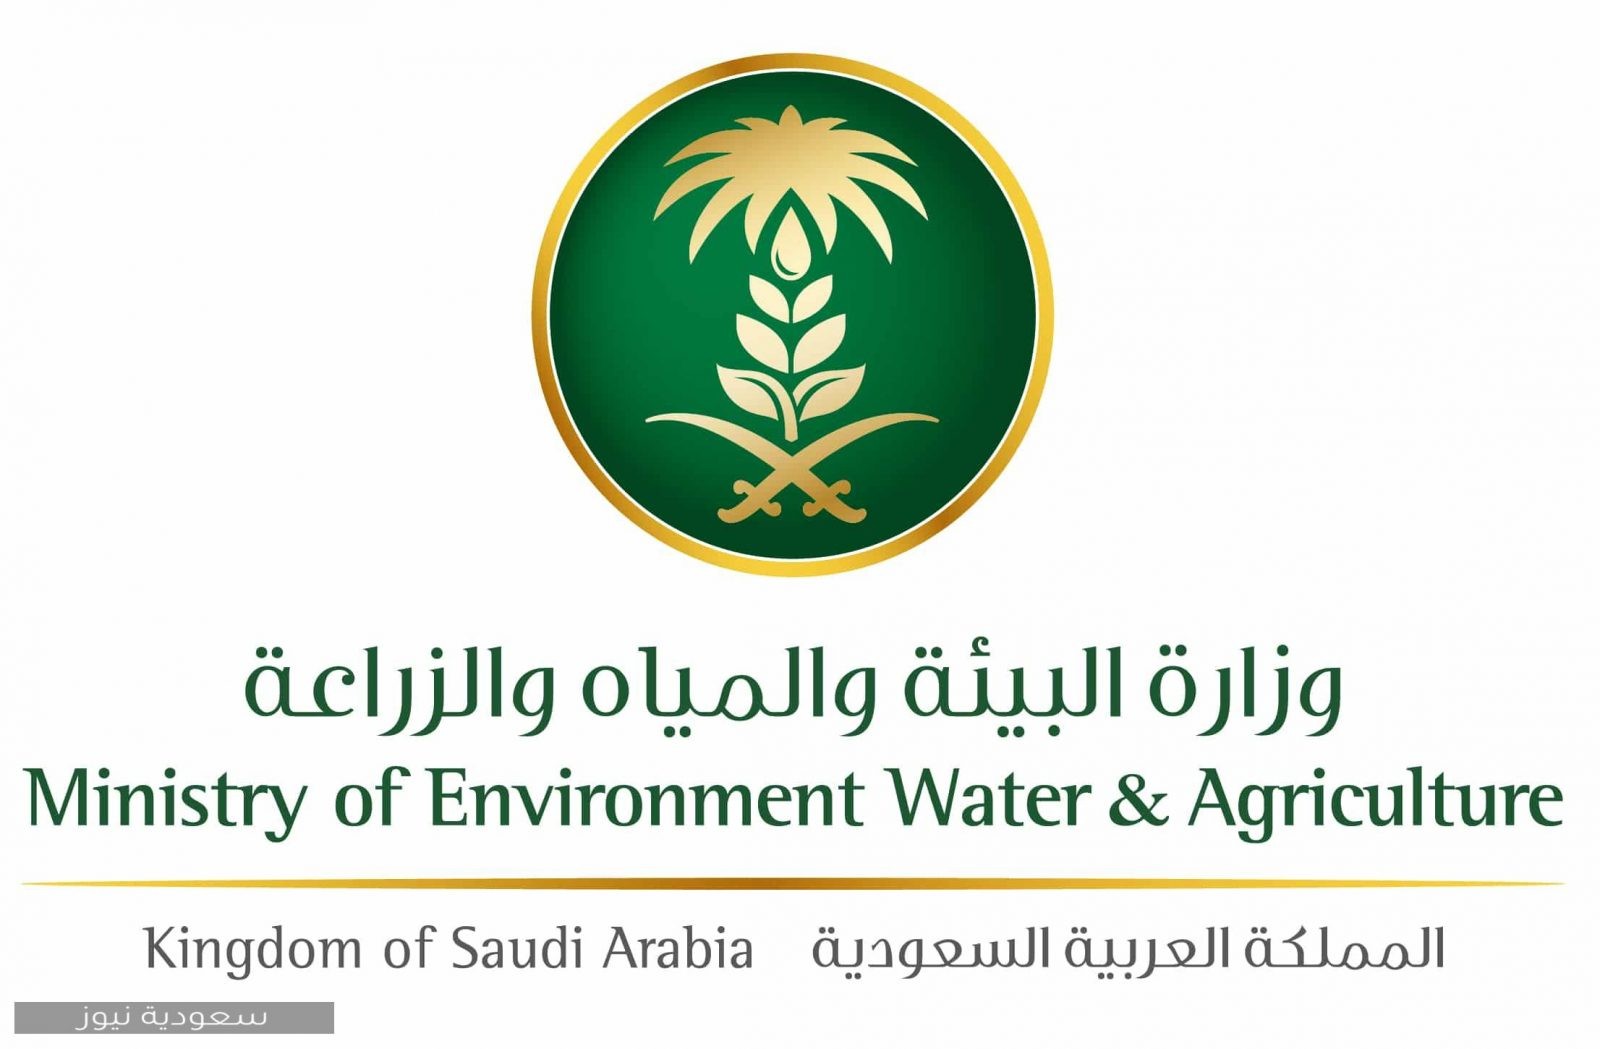 كيفية الحصول على إذن تصدير مبيدات زراعية من خلال بوابة الخدمات الإلكترونية عبر وزارة البيئة والمياه والزراعة